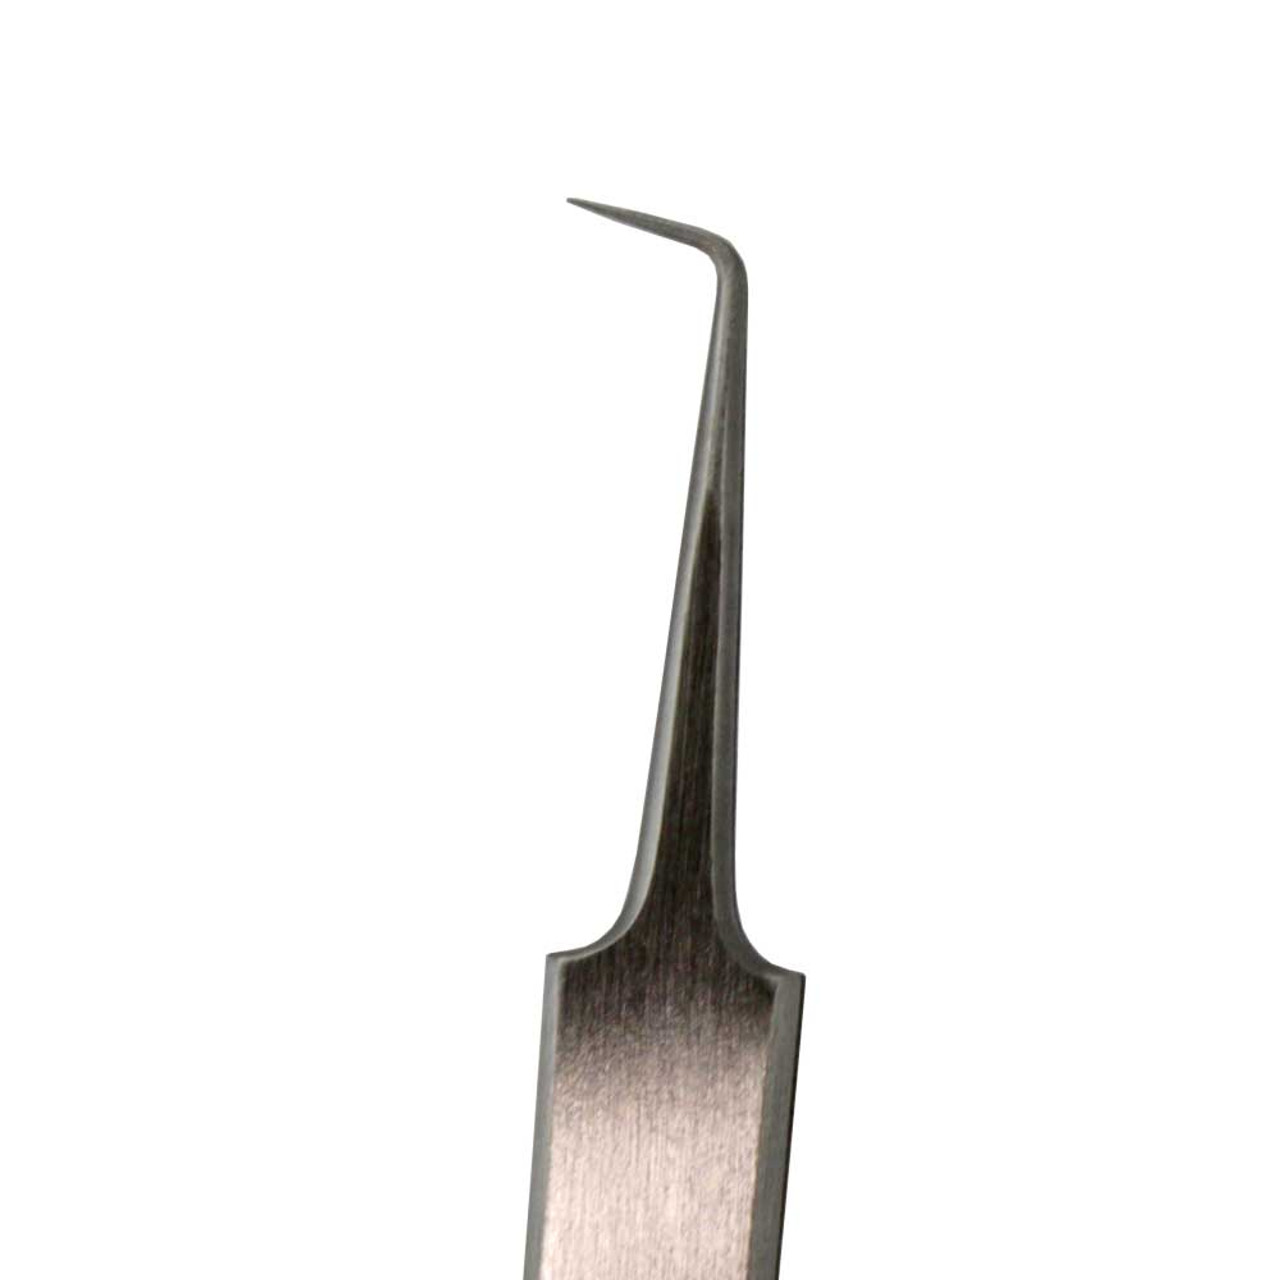 PTZ-51 ceramic tweezers (high temperature, 130mm